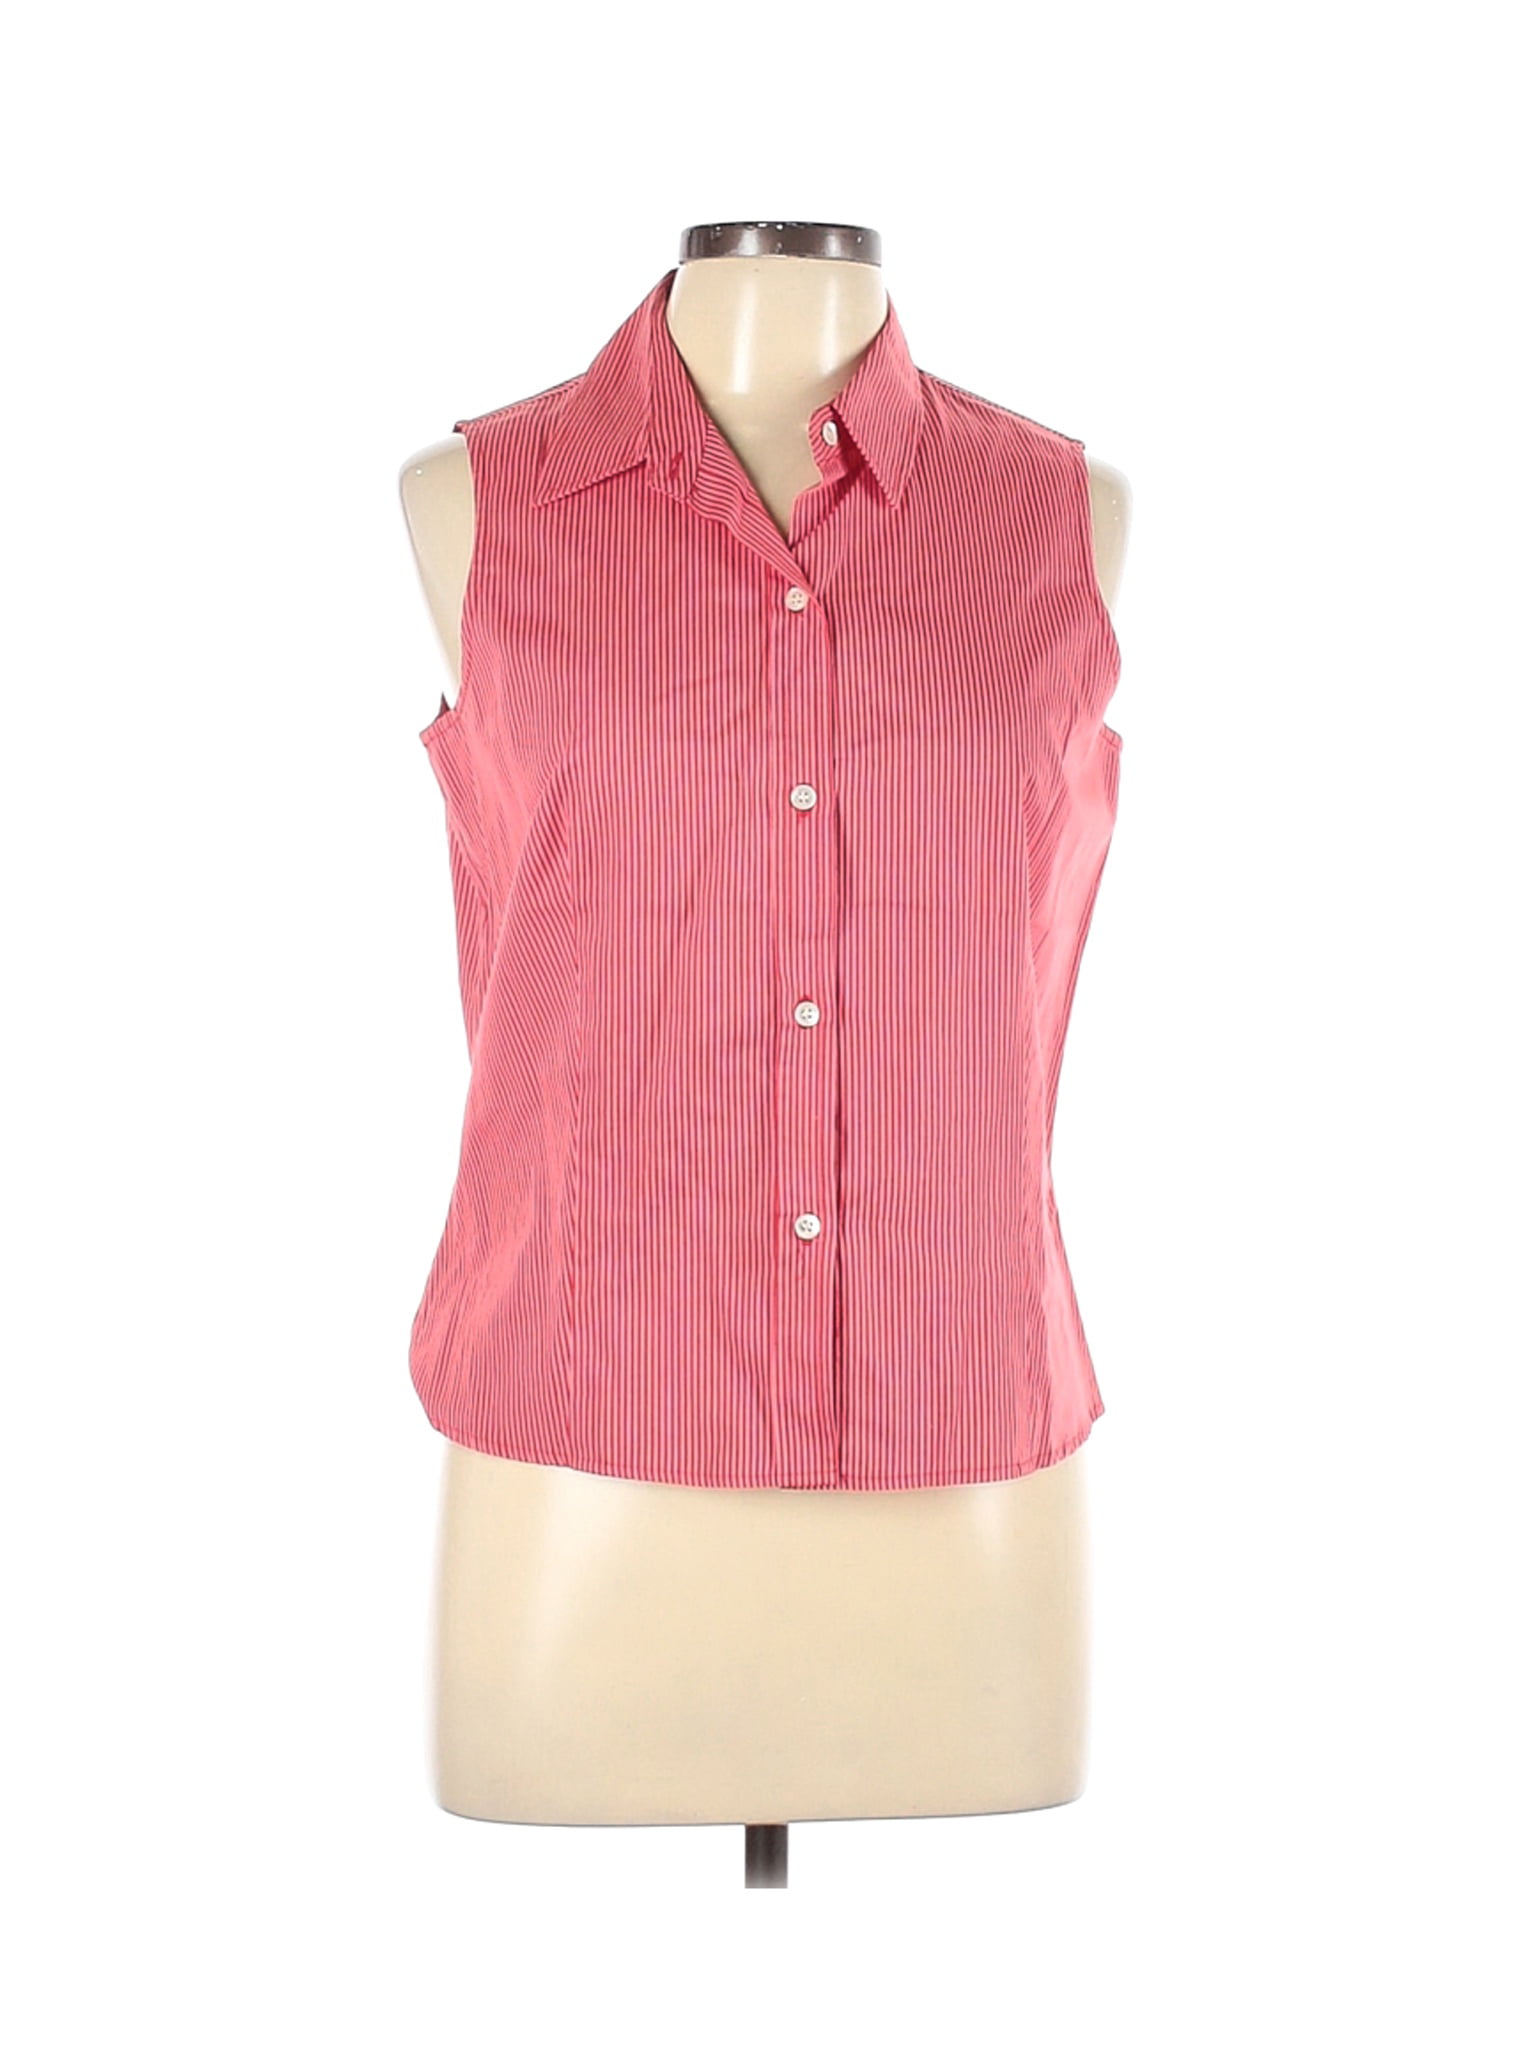 Pre-Owned J. McLaughlin Women's Size 10 Sleeveless Button-Down Shirt -  Walmart.com